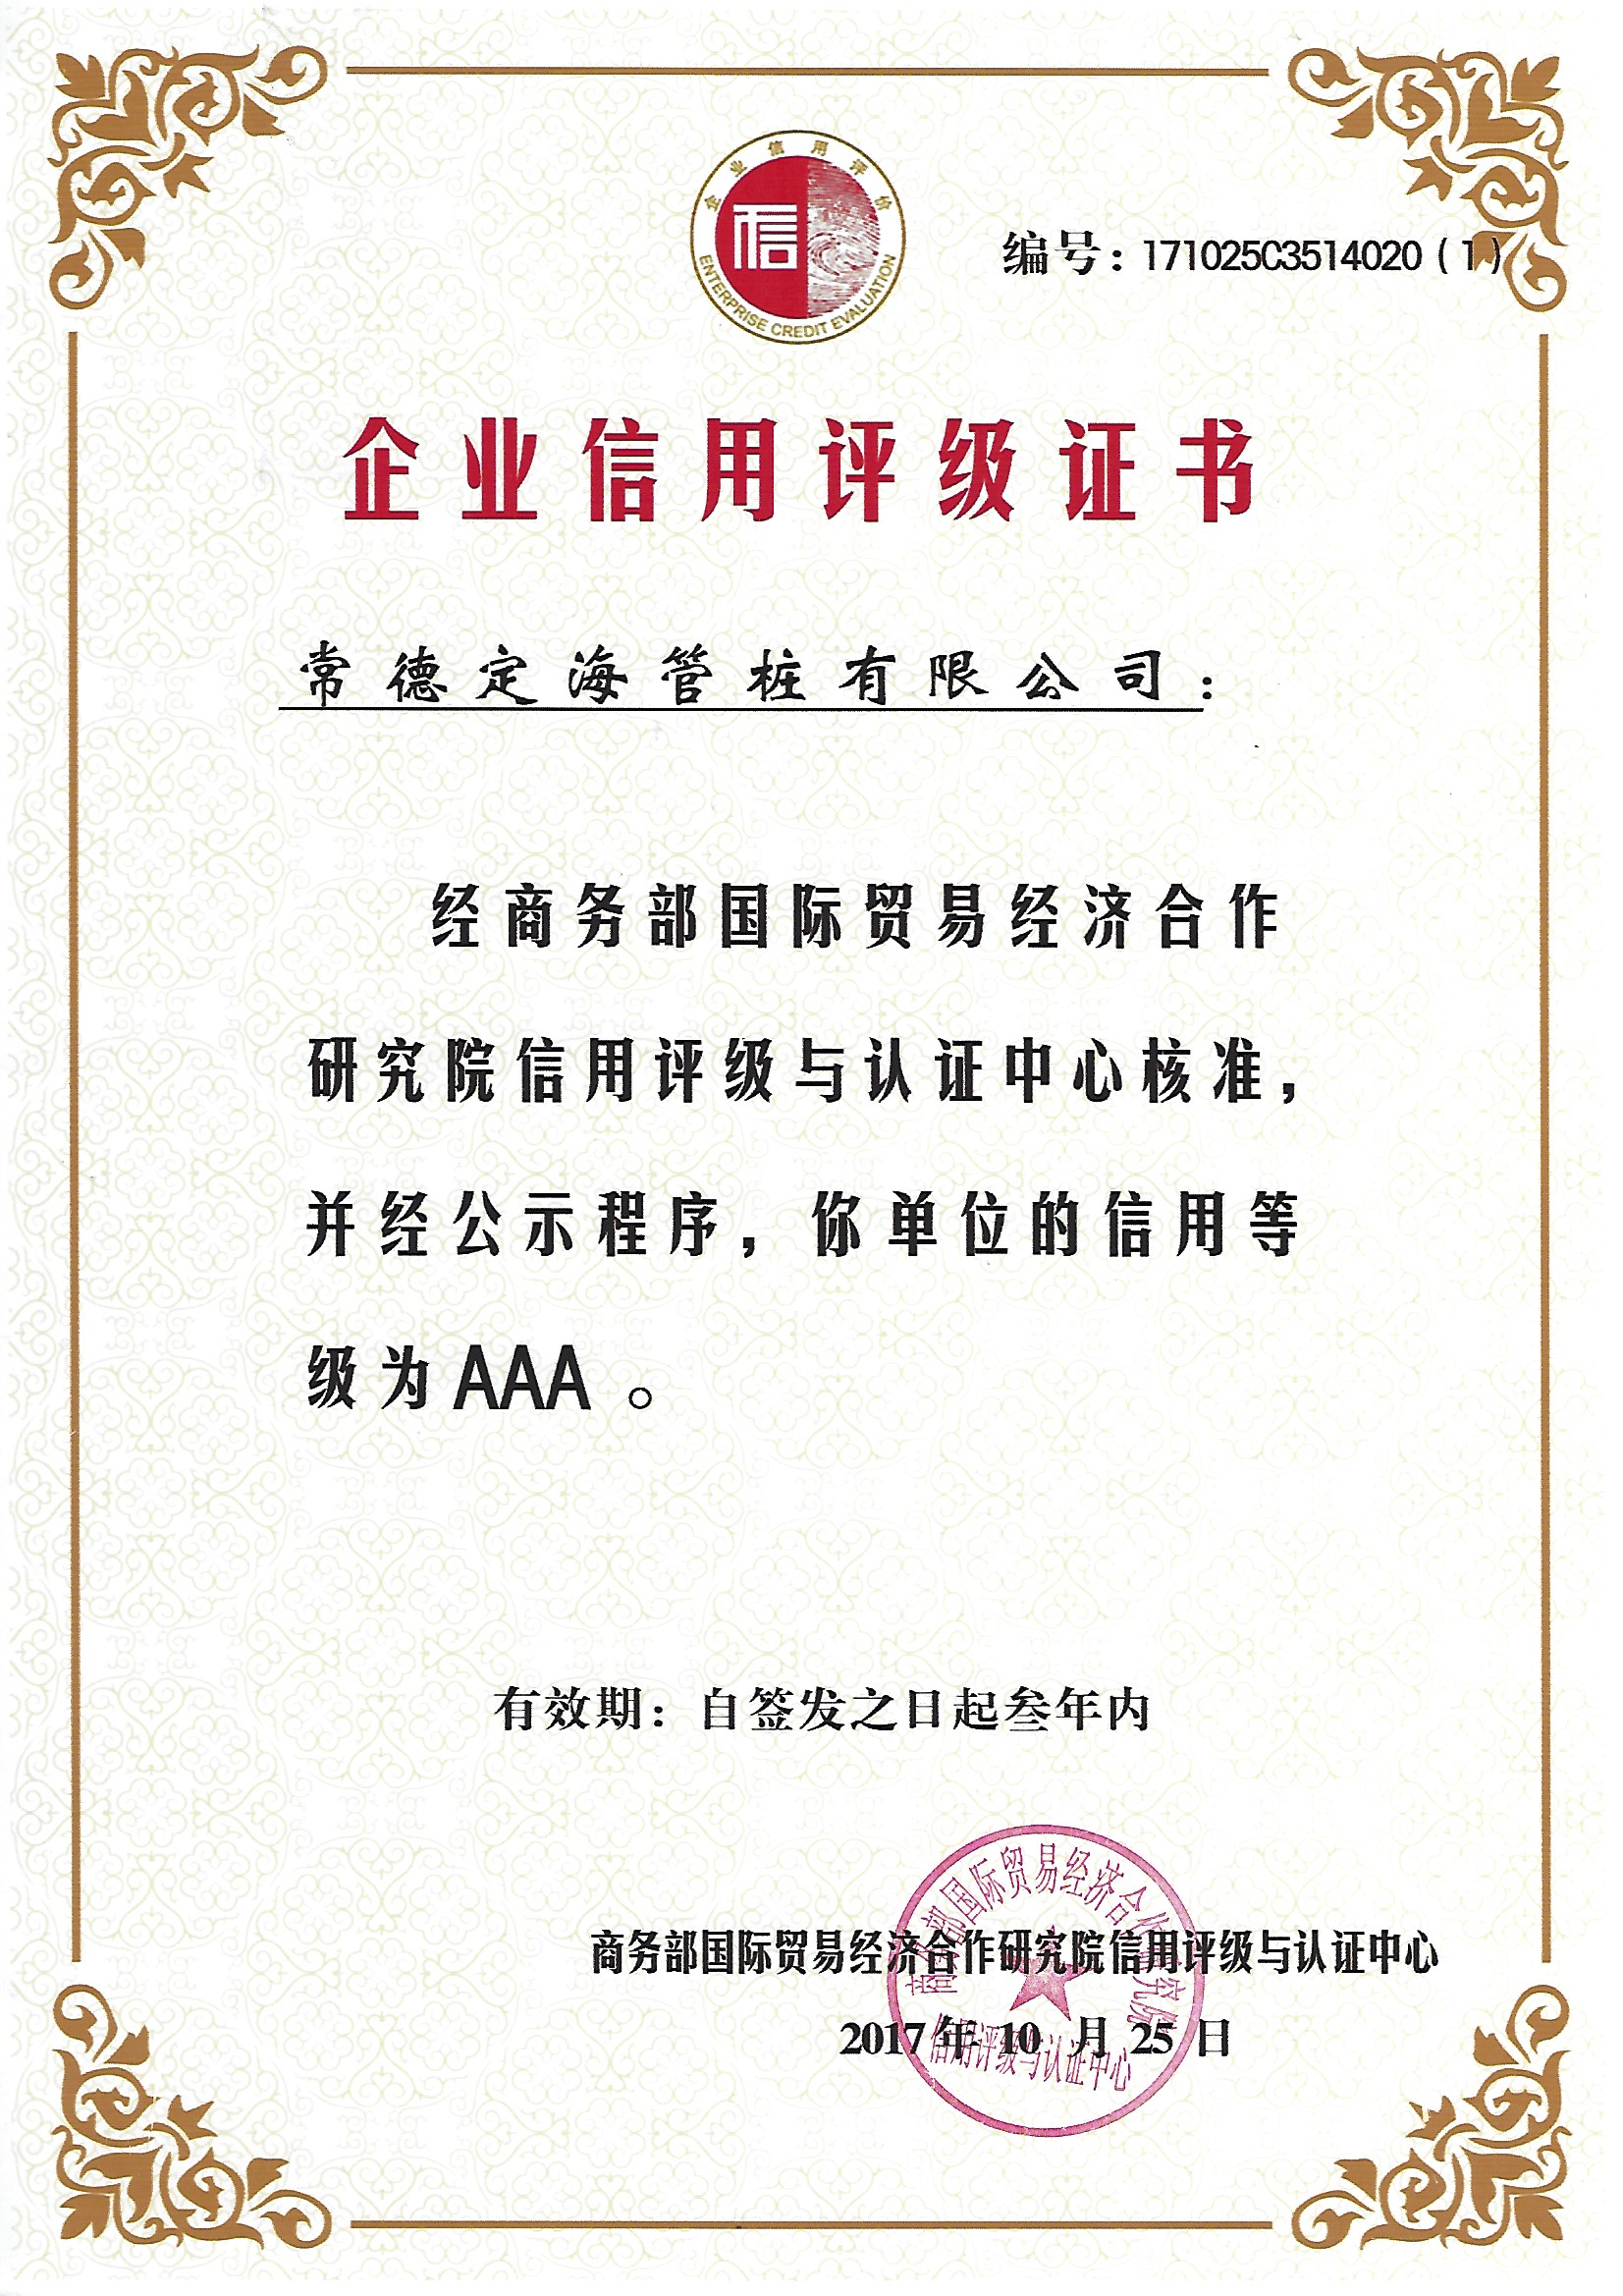 商務部國際貿易經濟合作研究院信用評級AAA級